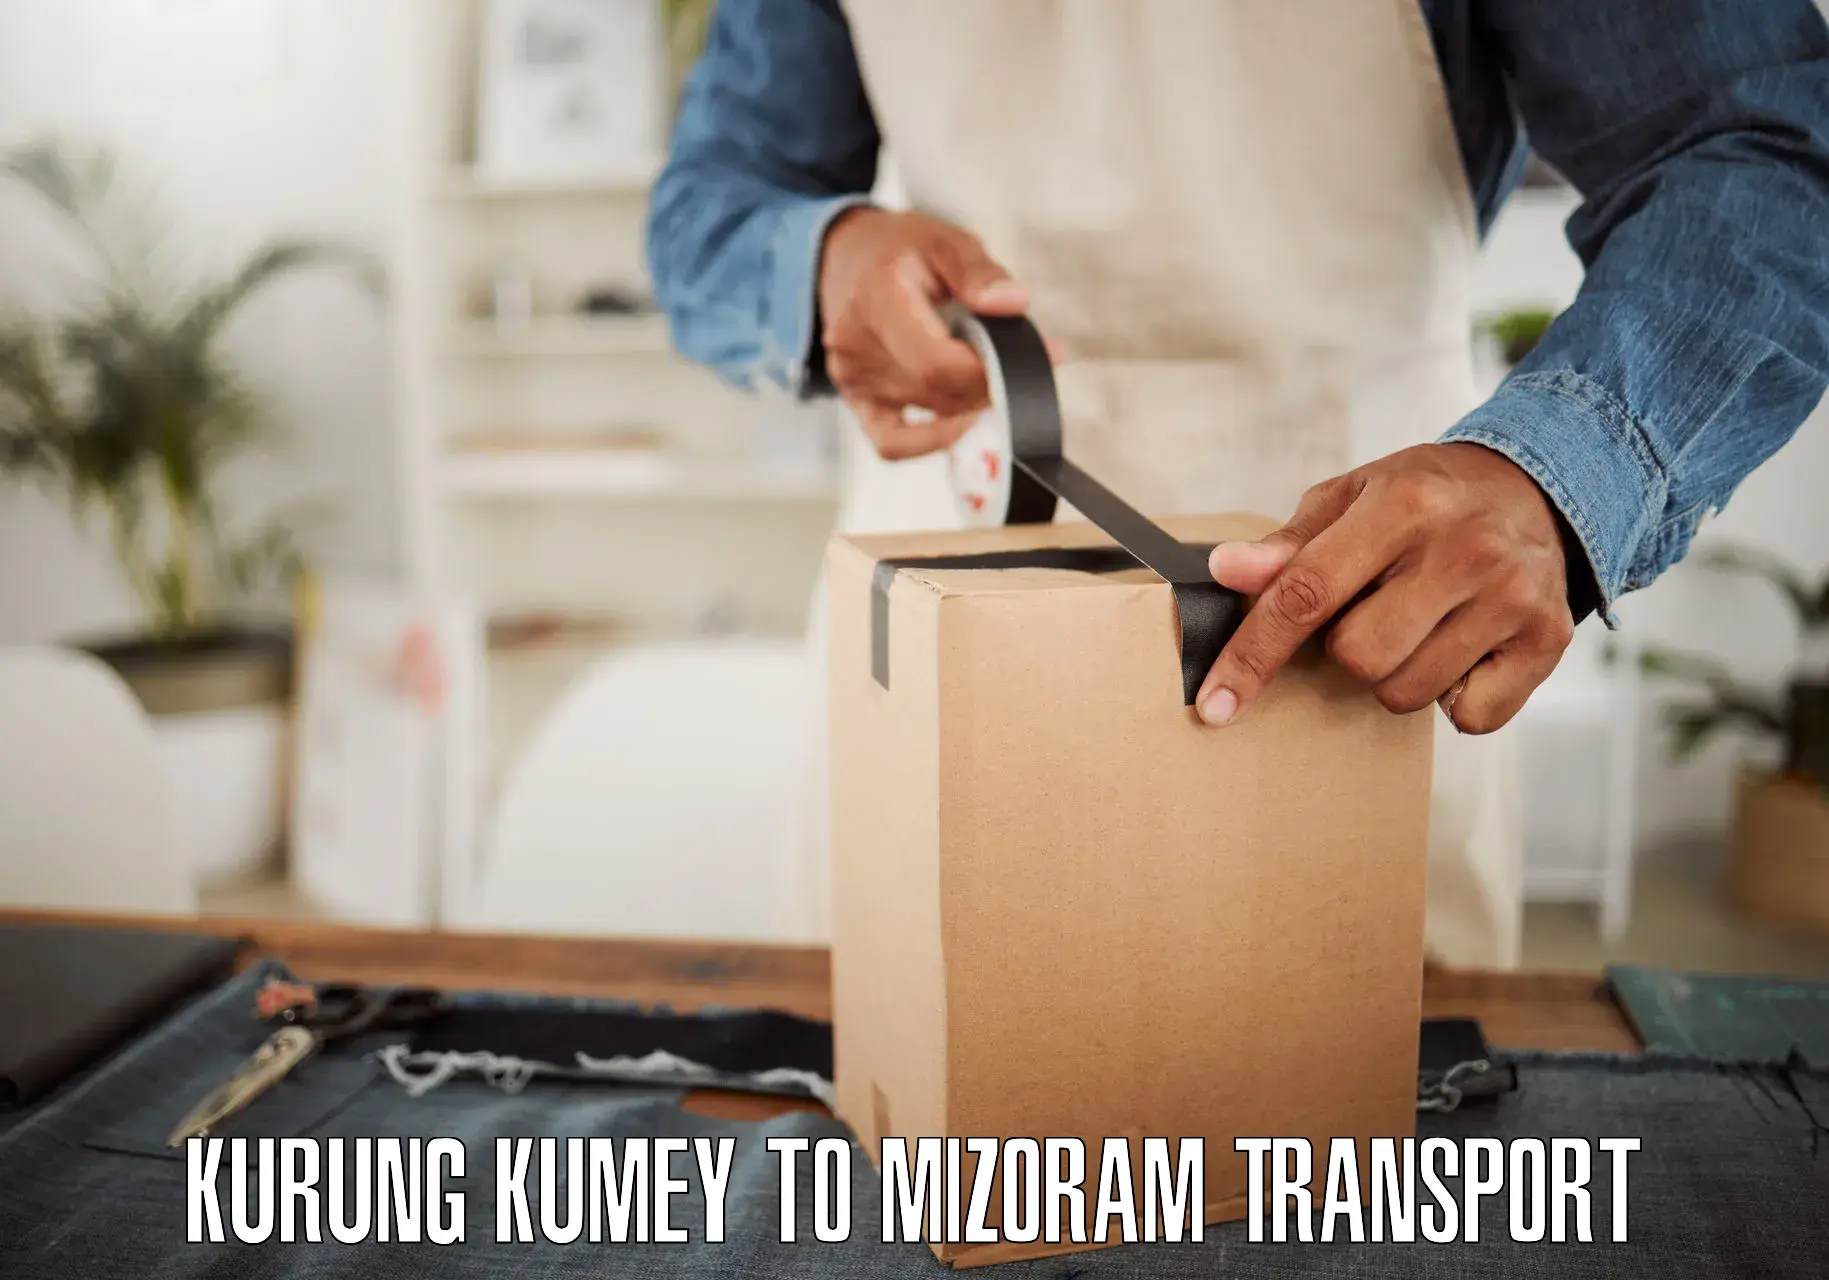 Container transport service Kurung Kumey to Mizoram